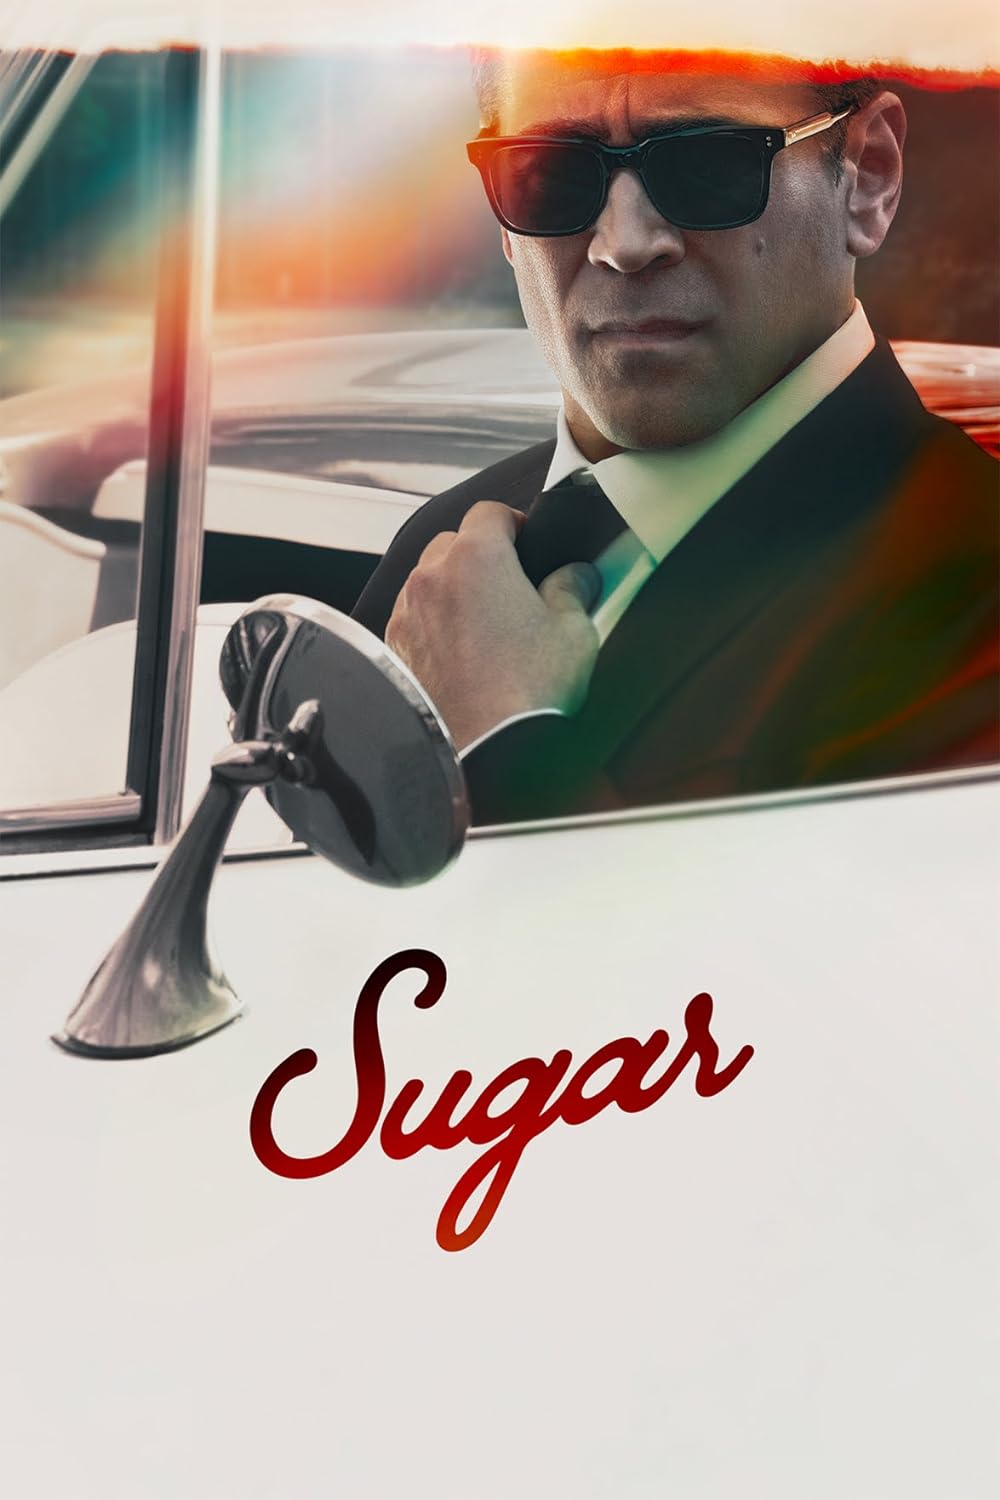 Sugar (2024)